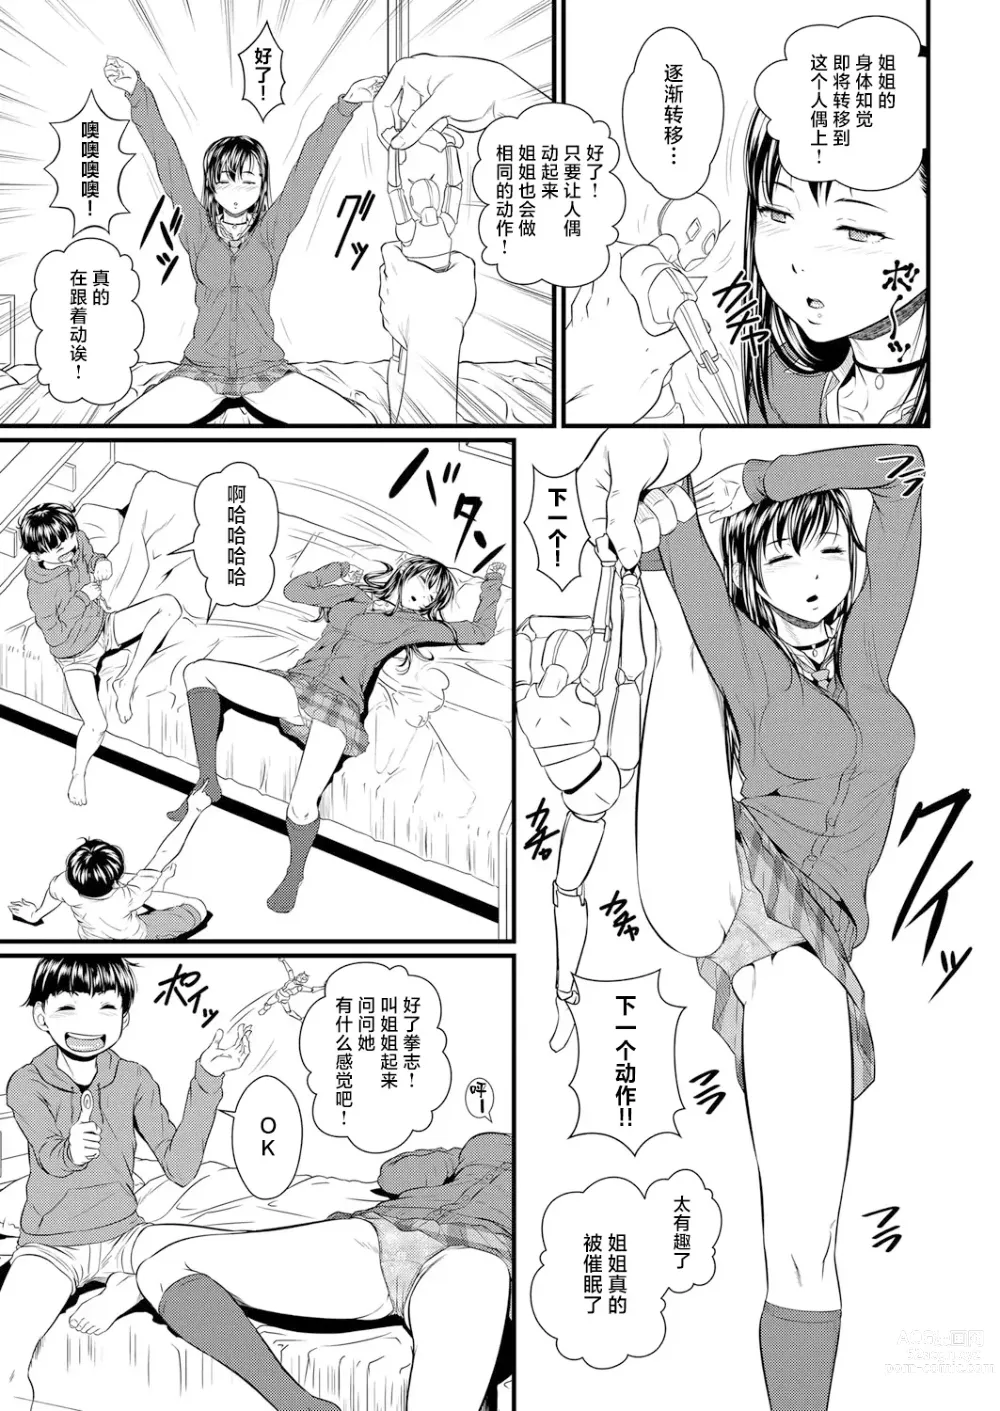 Page 7 of manga Miracle Illusion